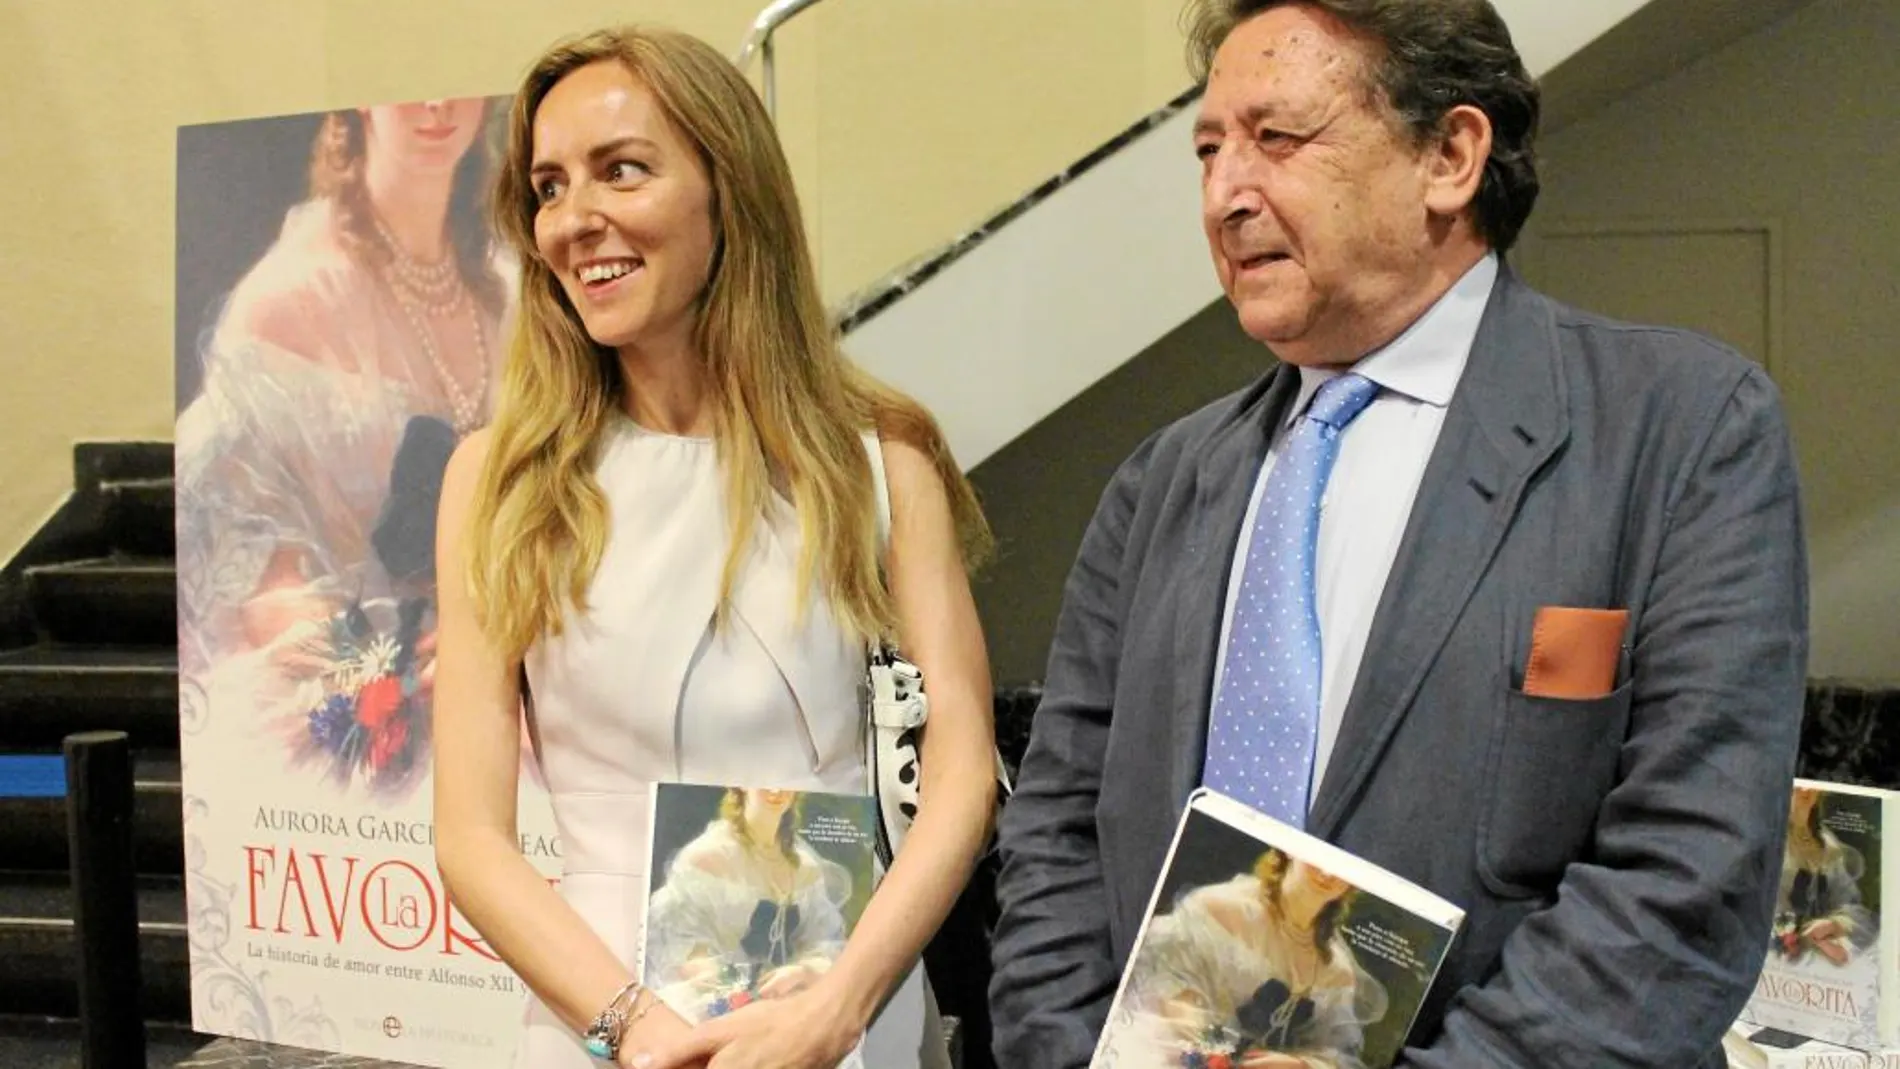 La autora, Aurora García Mateache, junto a Alfonso Ussía, en la presentación del libro